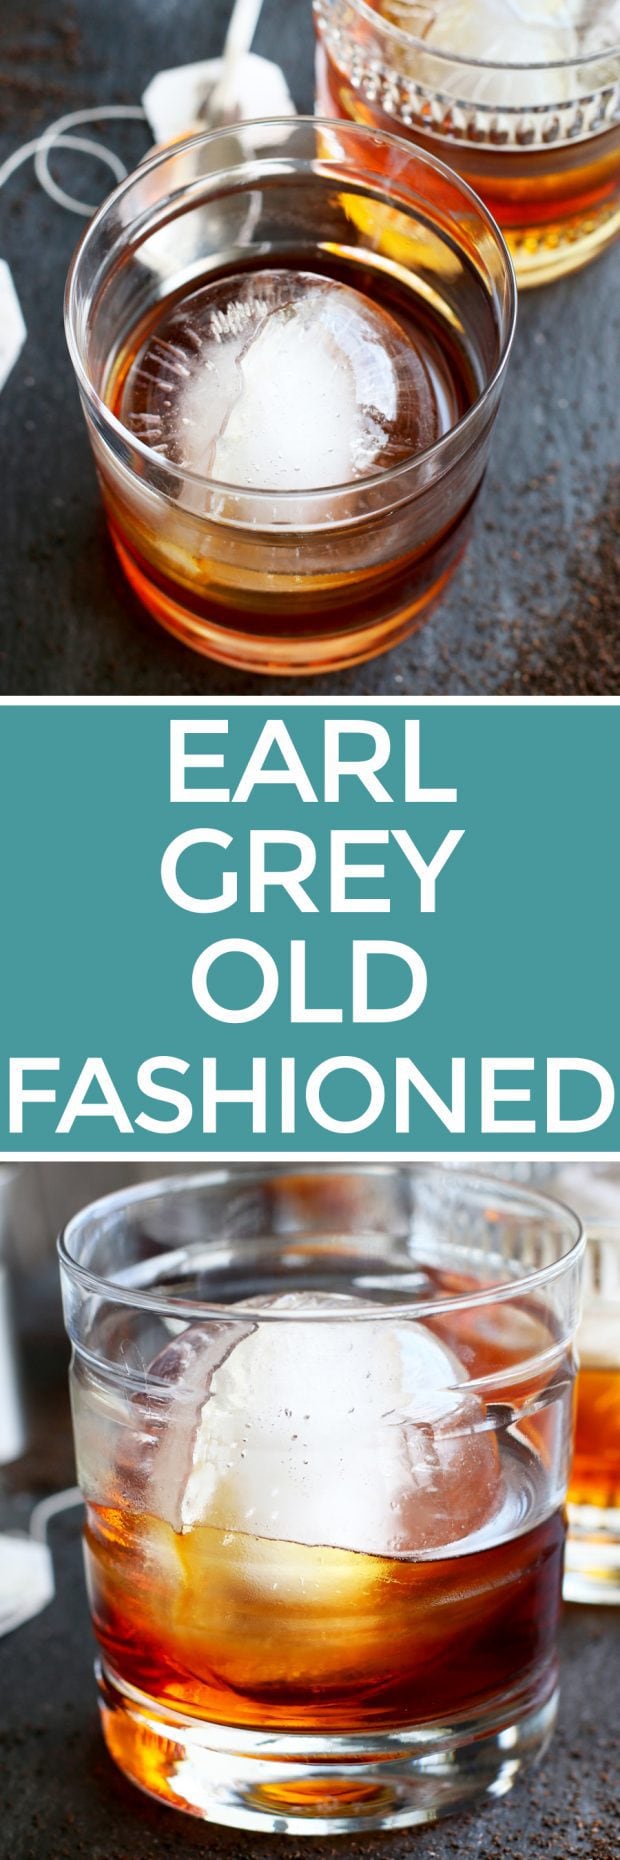 Earl Grey Old Fashioned